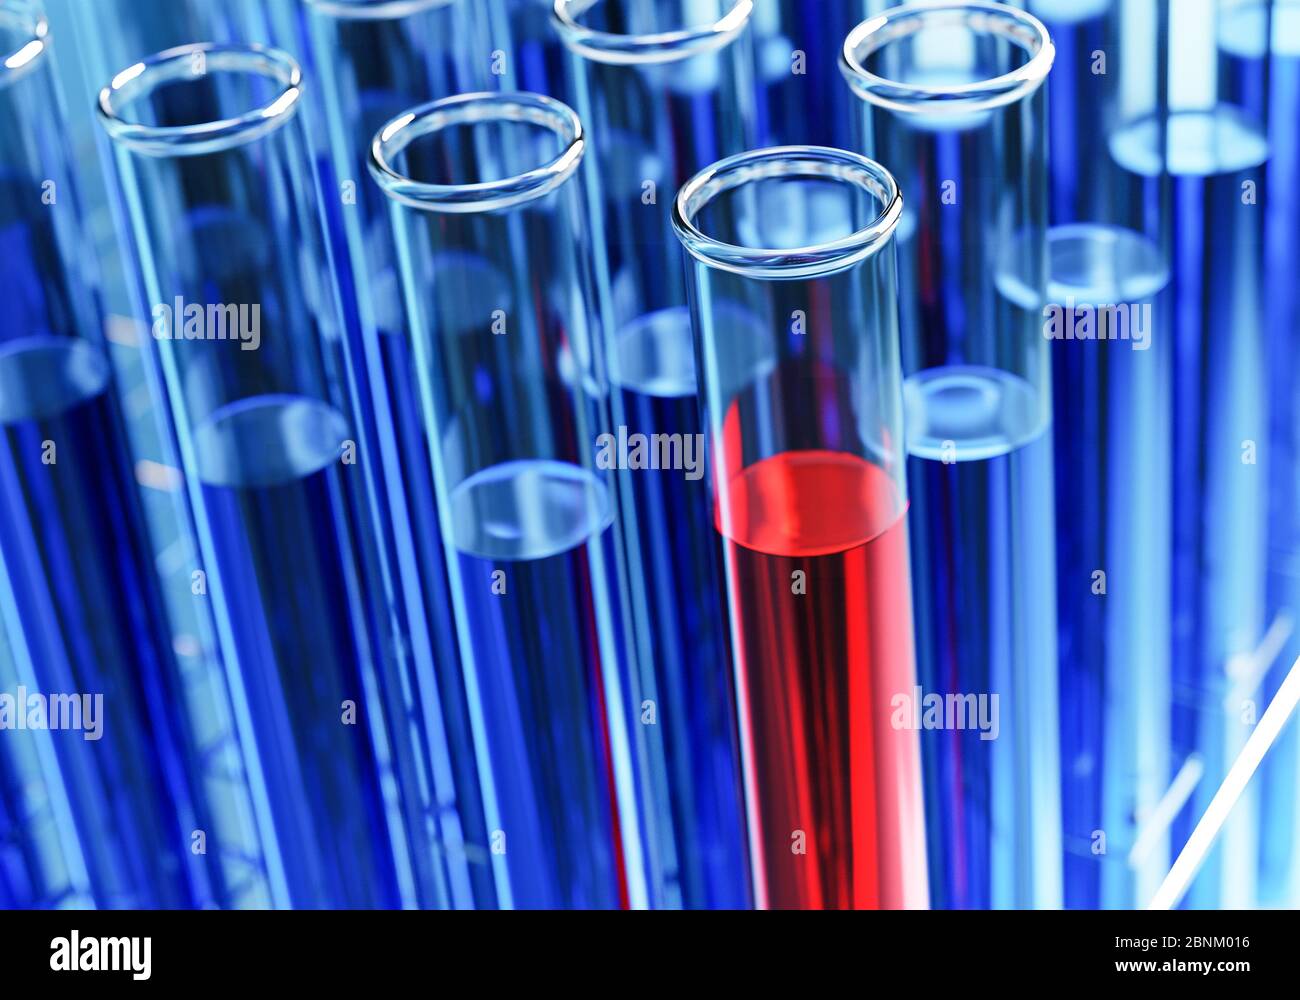 Reagenzgläser mit roter oder blauer Flüssigkeit in einem Halter. Prüflabor, chemische Testeinrichtung, medizinische Tests. Stockfoto